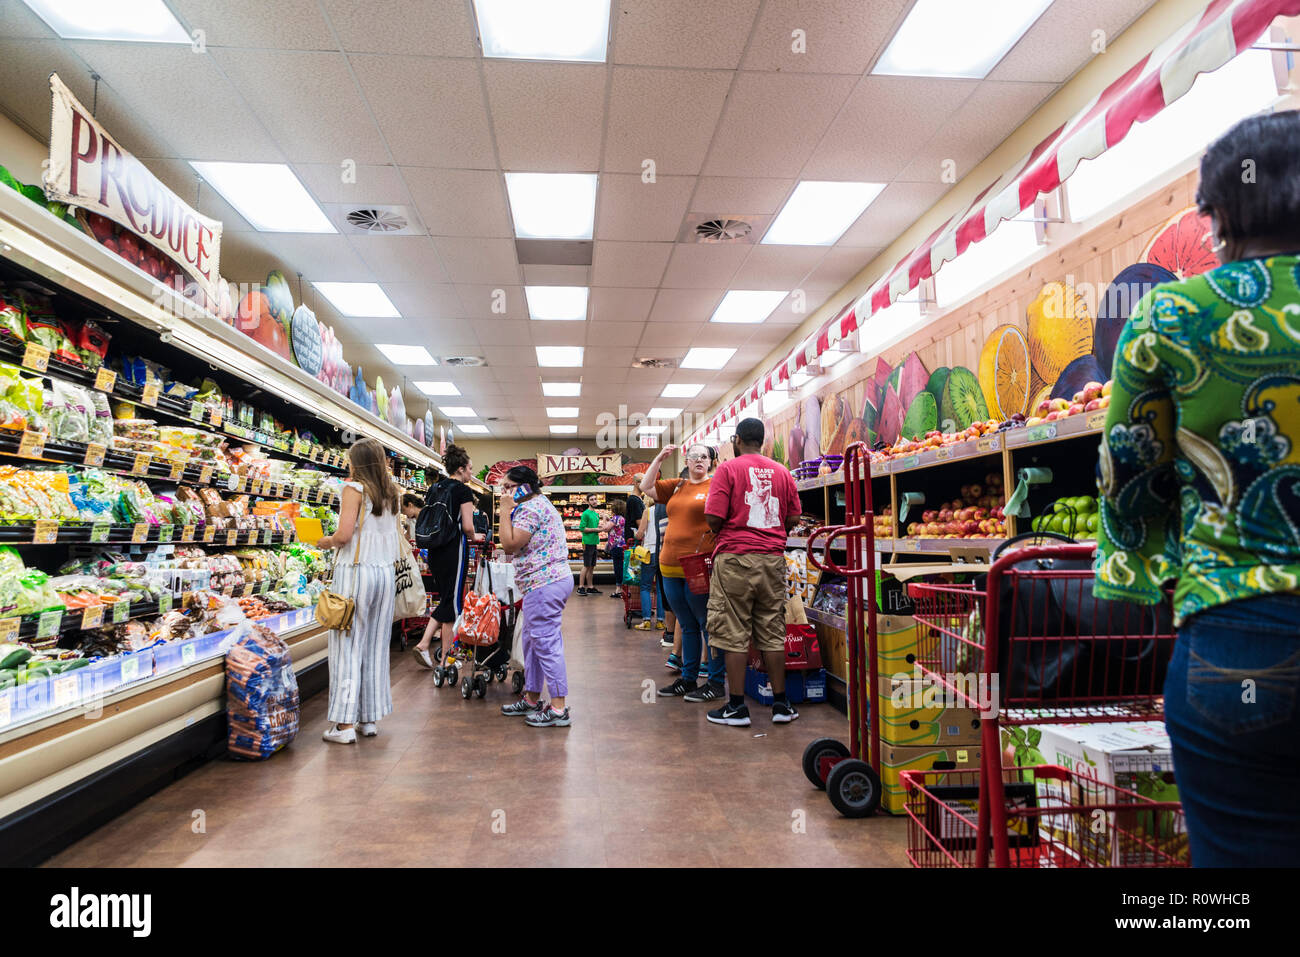 La ville de New York, USA - Le 26 juillet 2018 : Les gens d'acheter dans un supermarché de Brooklyn à New York City, USA Banque D'Images